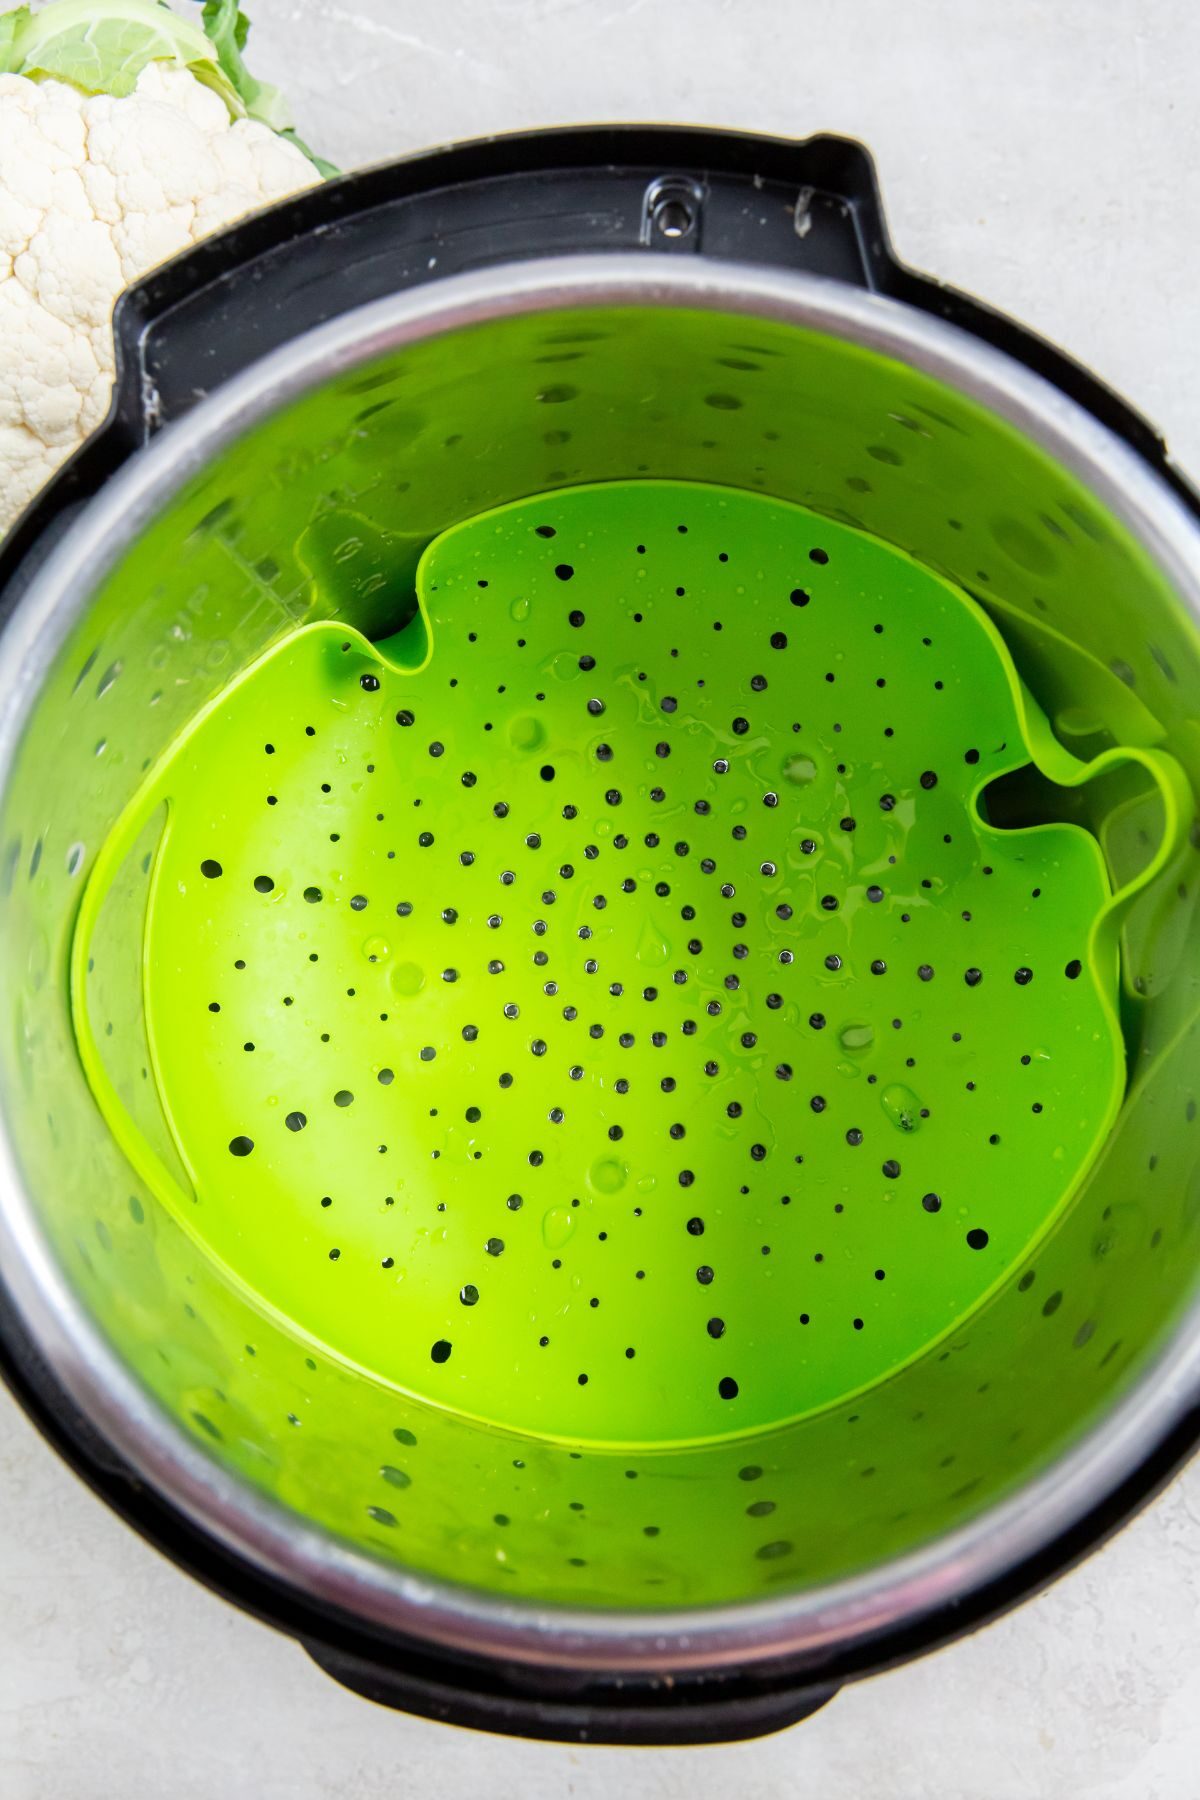 instant pot with a a green trivet.